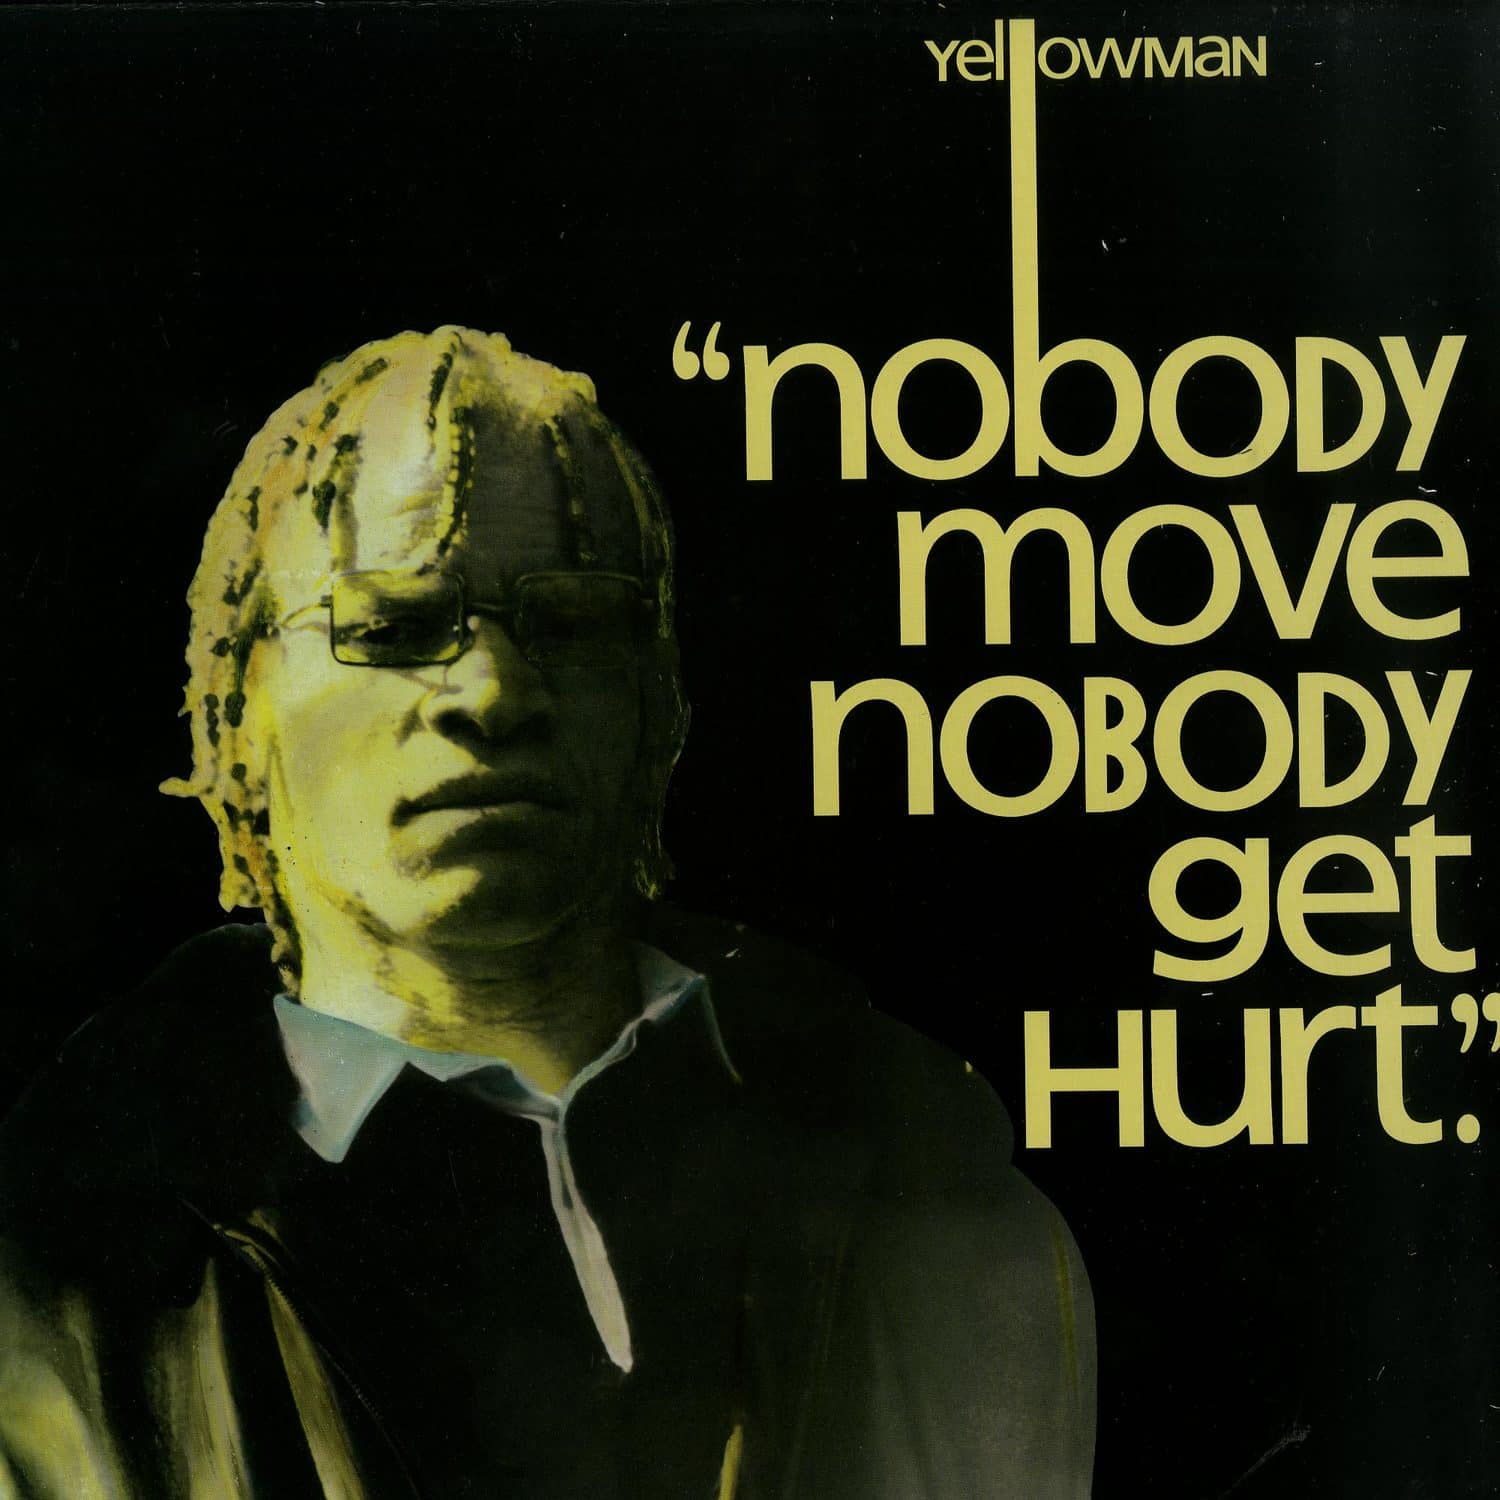 Yellowman - NOBODY MOVE NOBODY GET HURT 